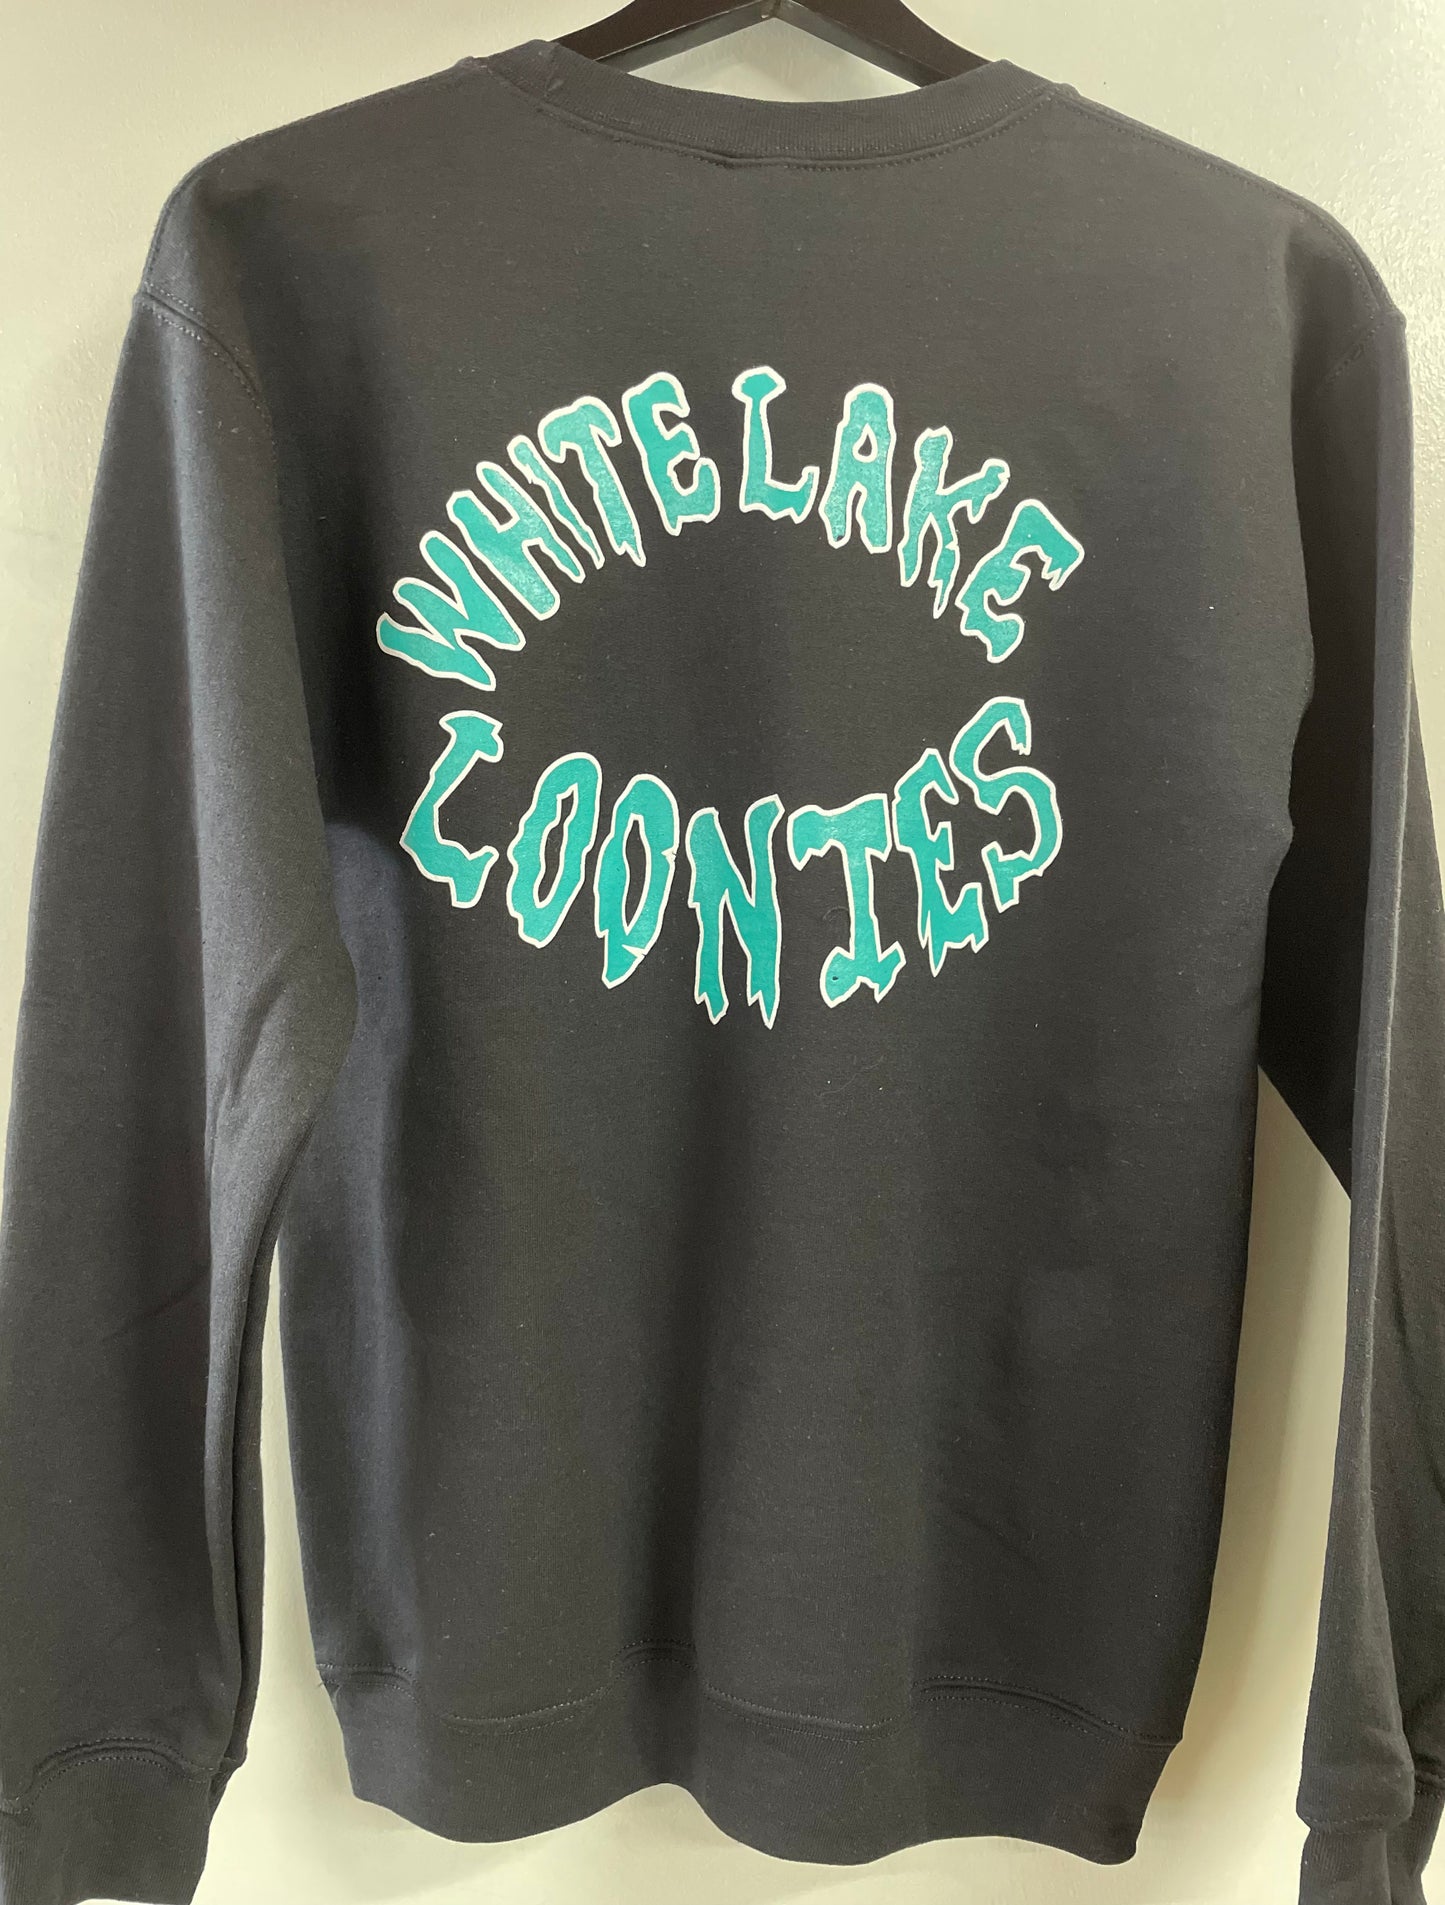 White Lake Loonies Crewneck Sweatshirt